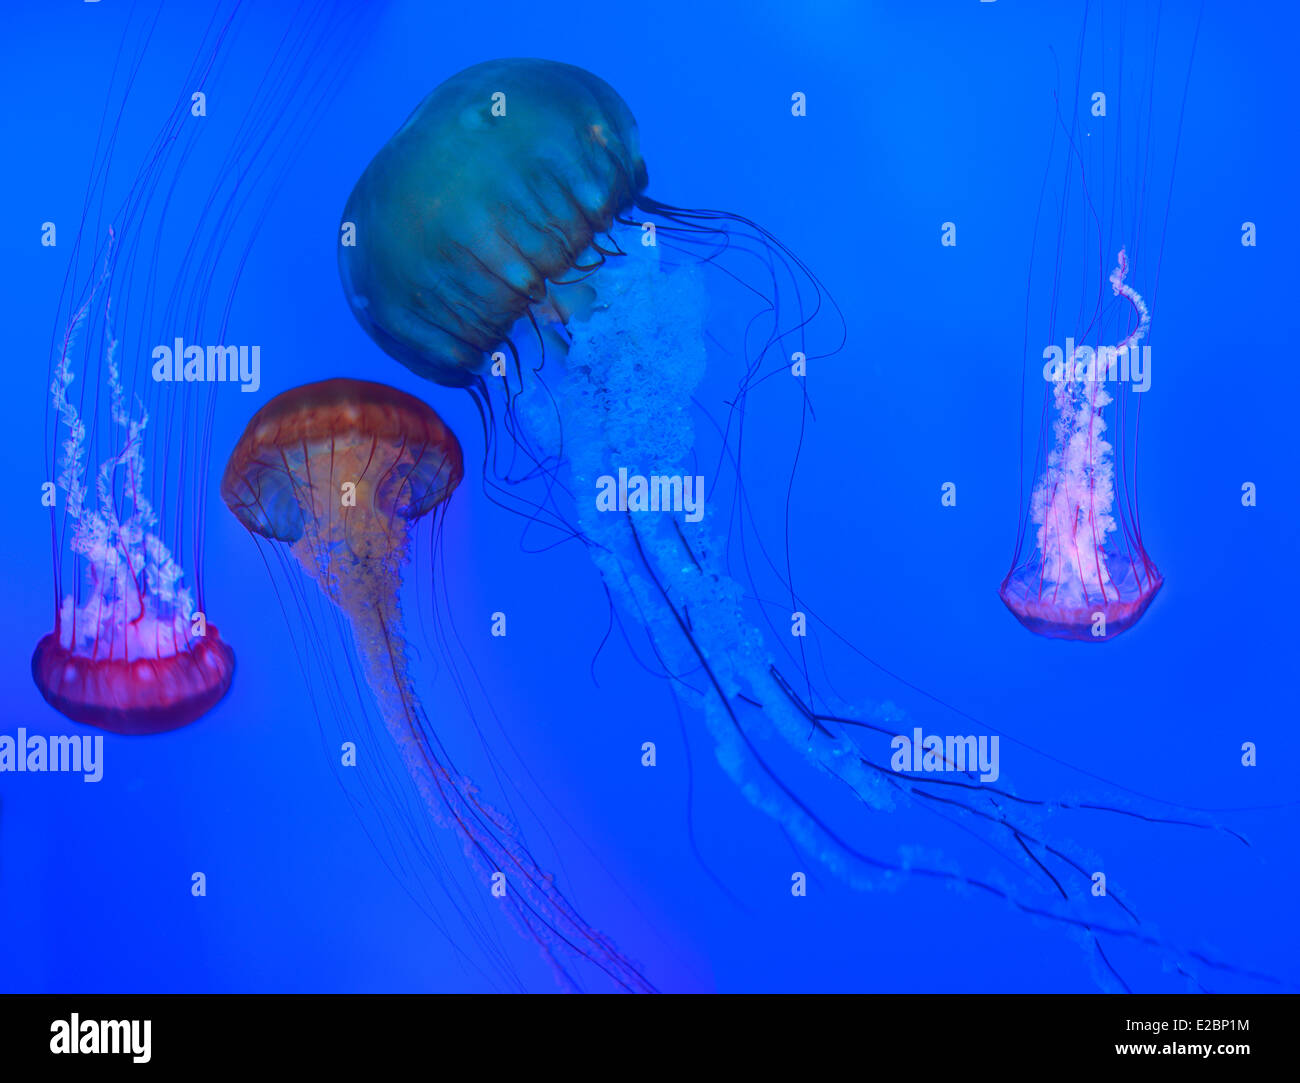 Pazifischen Meer Nesseln mit lange nesselnden Tentakeln schwimmen und Baden im Ripleys Aquarium Toronto auf blauem Hintergrund Stockfoto